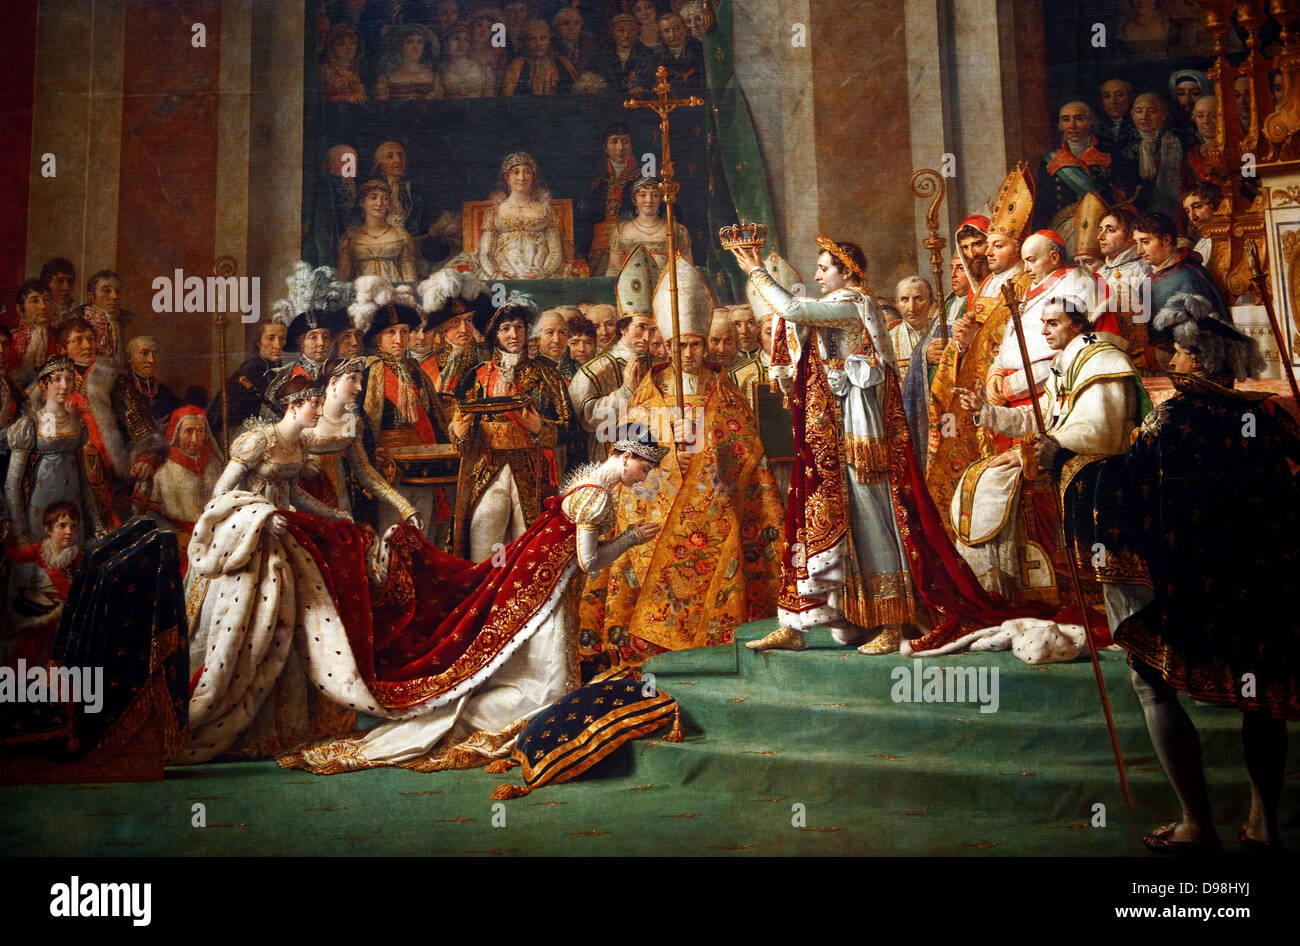 La coronación de Napoleón" la pintura terminada en 1807 por Jacques-Louis  David, el pintor oficial de Napoleón. La pintura tiene imponentes  dimensiones, ya que es casi 10 metros de ancho por unos